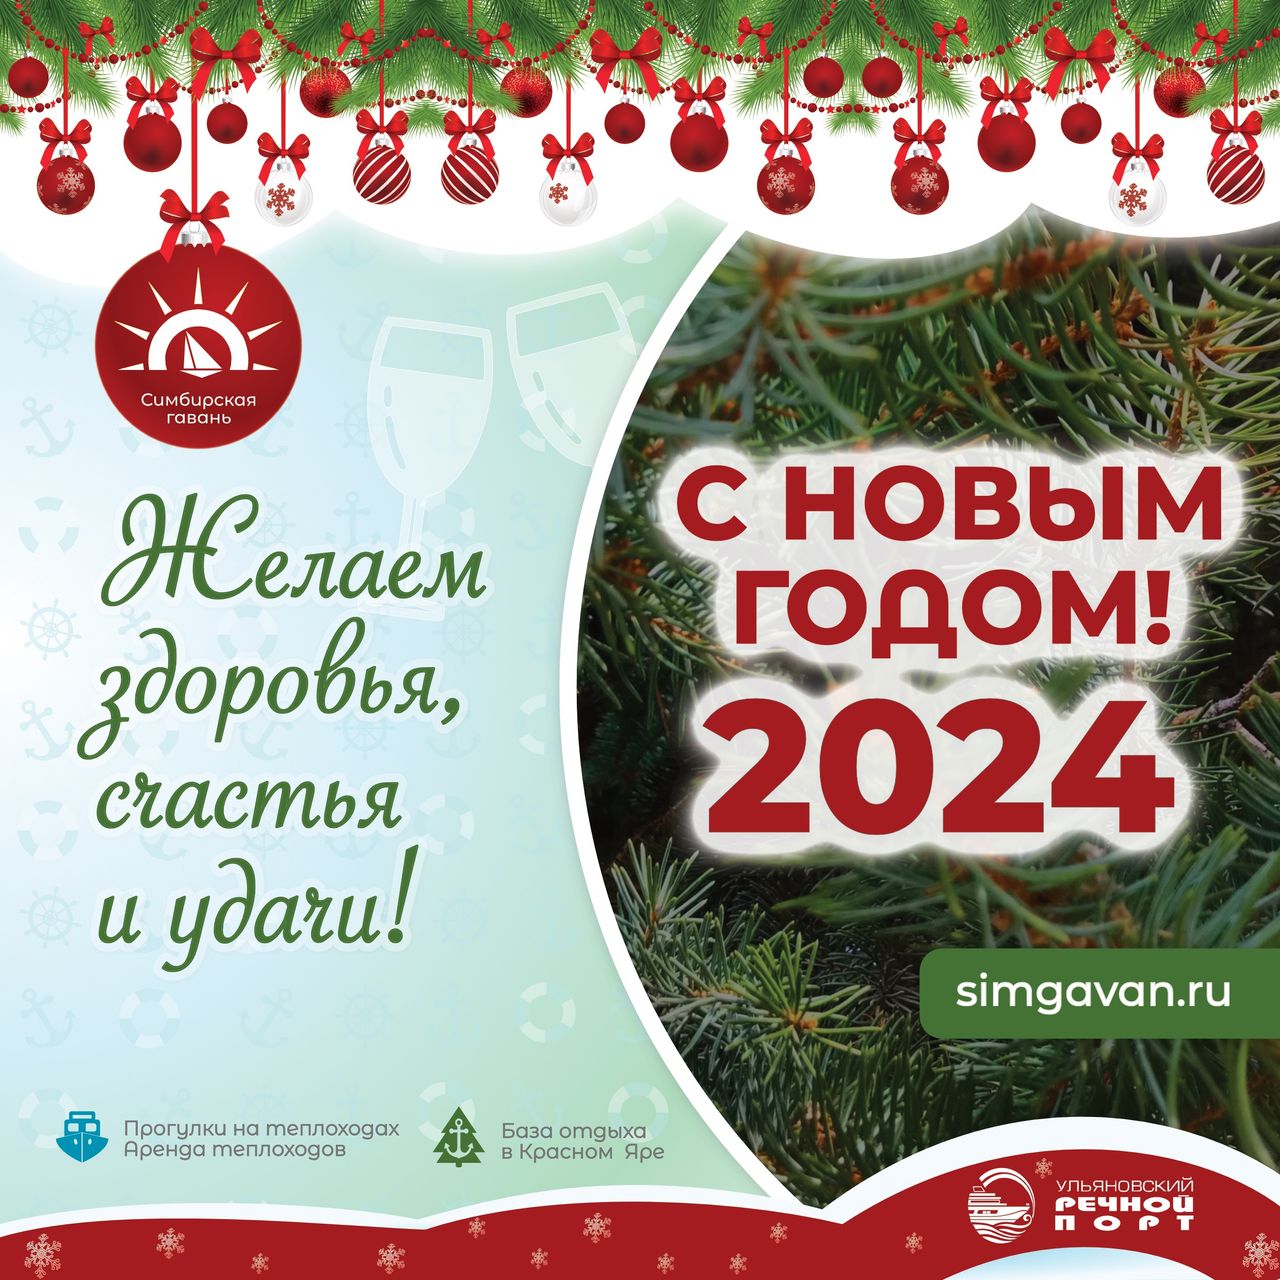 Ульяновский речной порт и компания «Симбирская гавань» поздравляет вас с новогодними праздниками!